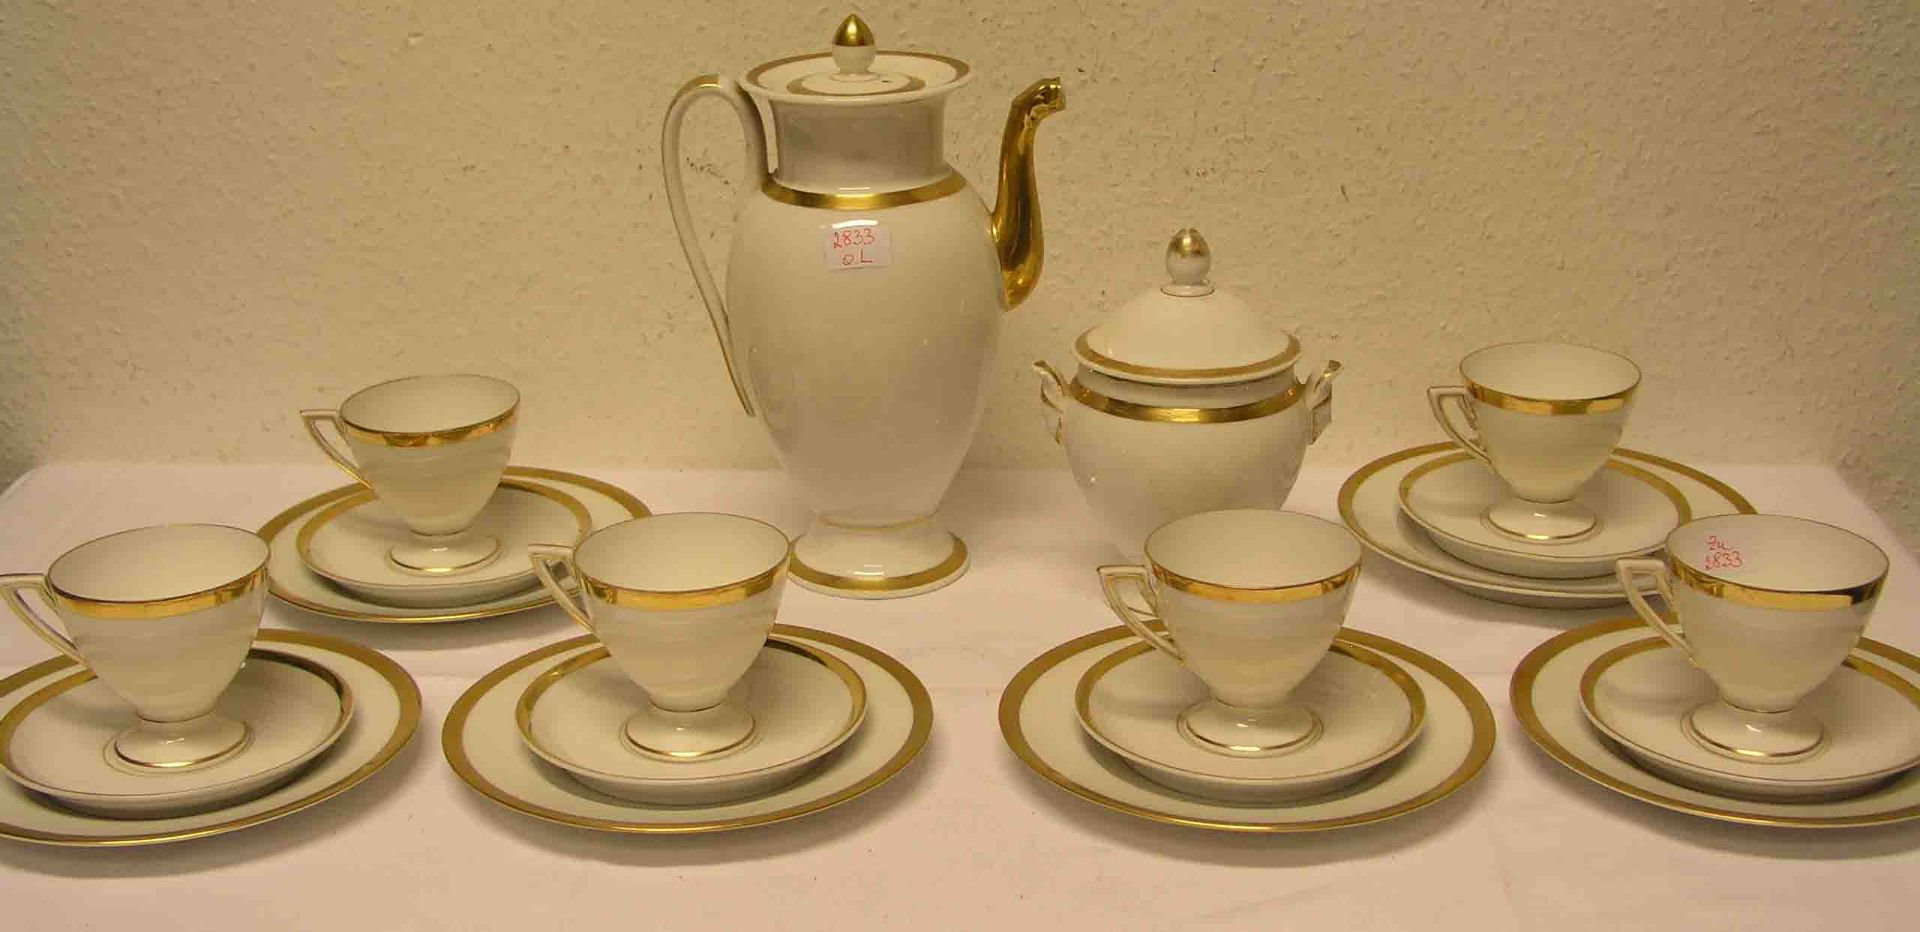 Kaffeeservice für sechs Personen. Porzellan, im Empirestil, Goldstaffage, leicht berieben.